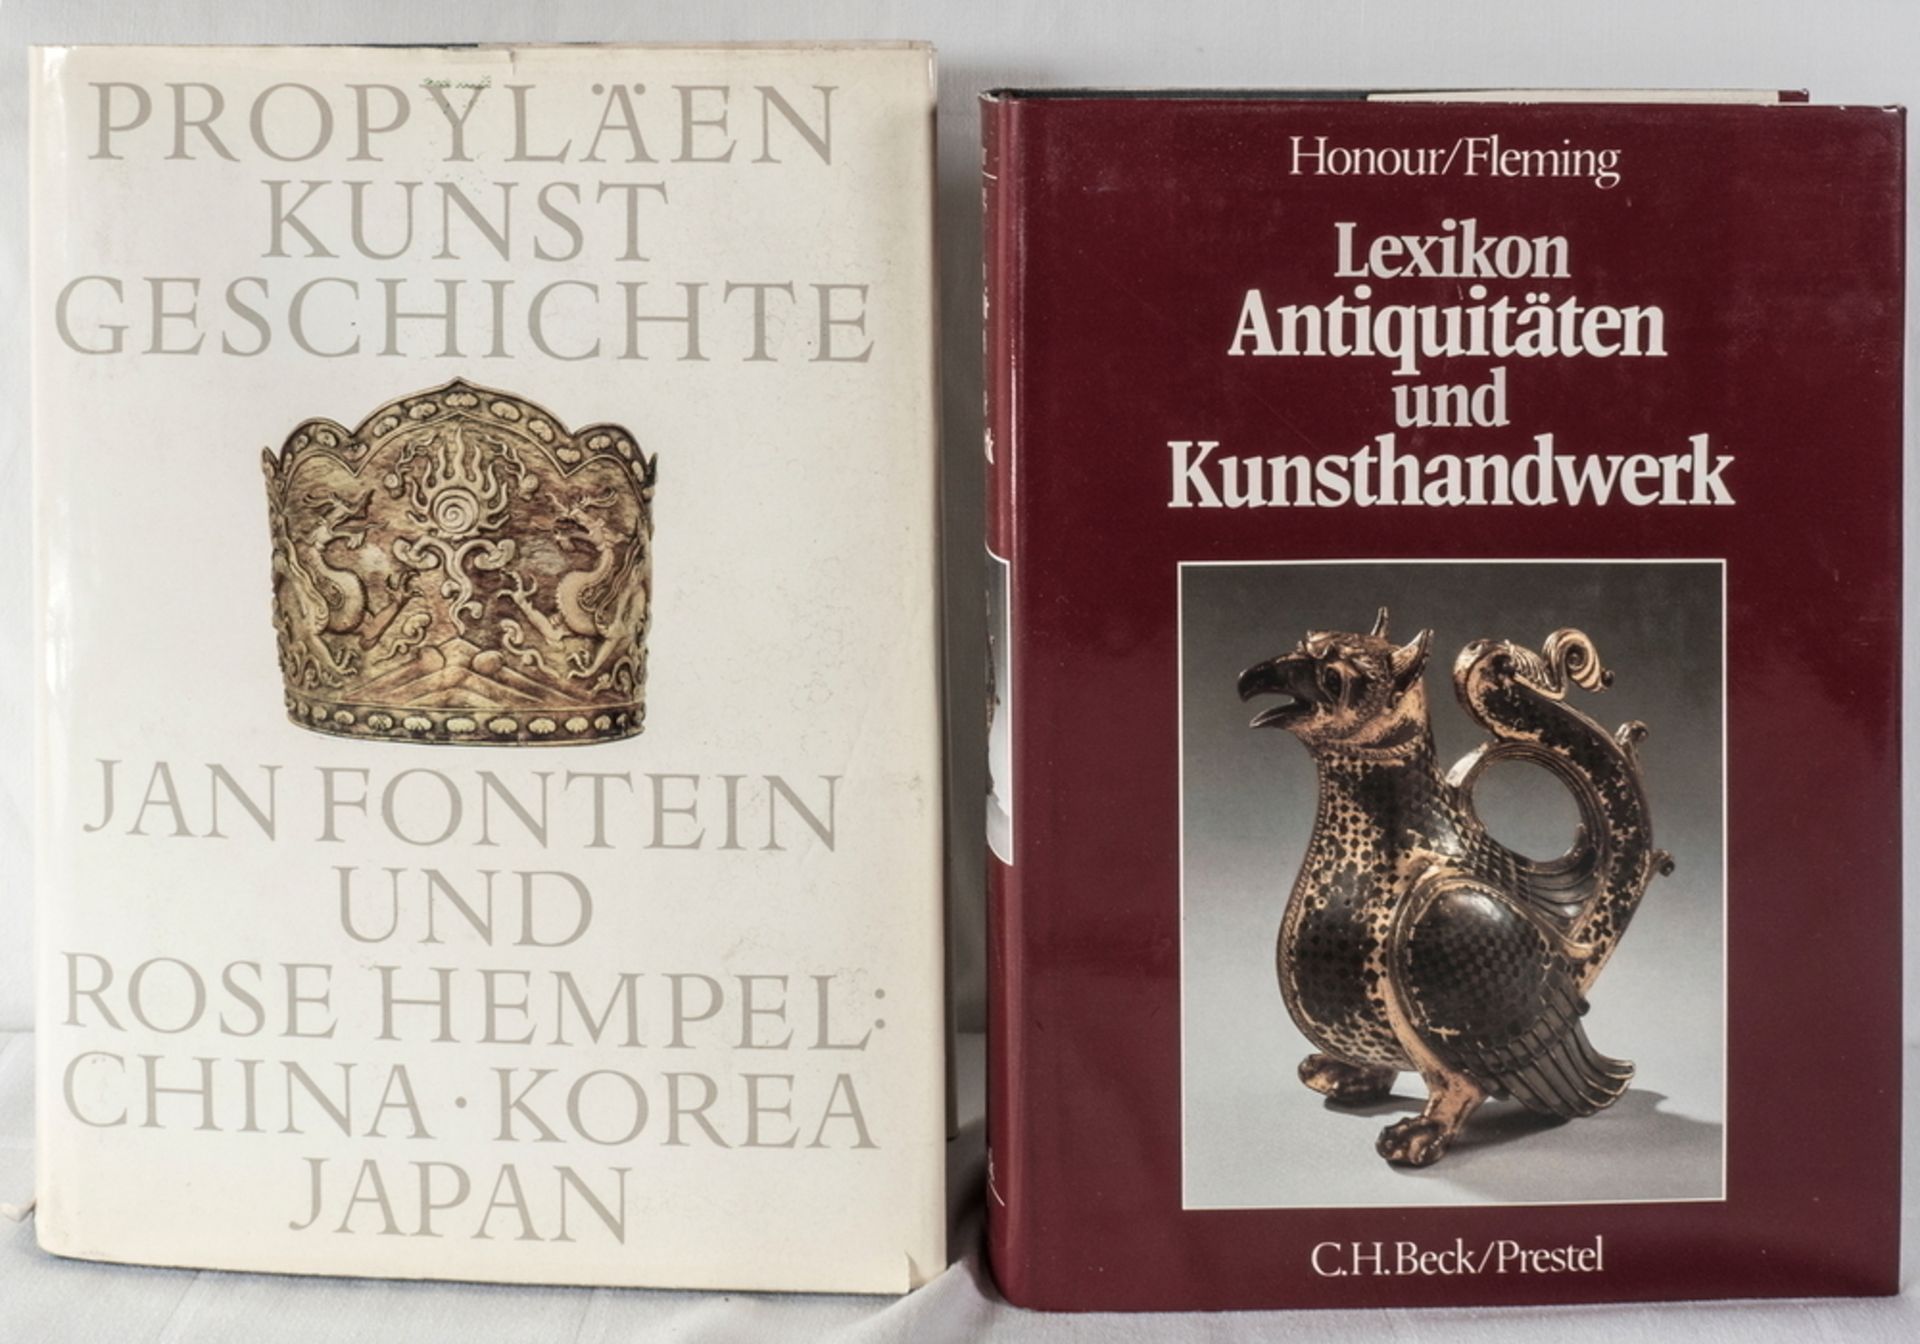 Propyläen Kunstgeschichte, Band 17 "China, Korea, Japan" und Honour / Fleming, "Lexikon Antiquitäten